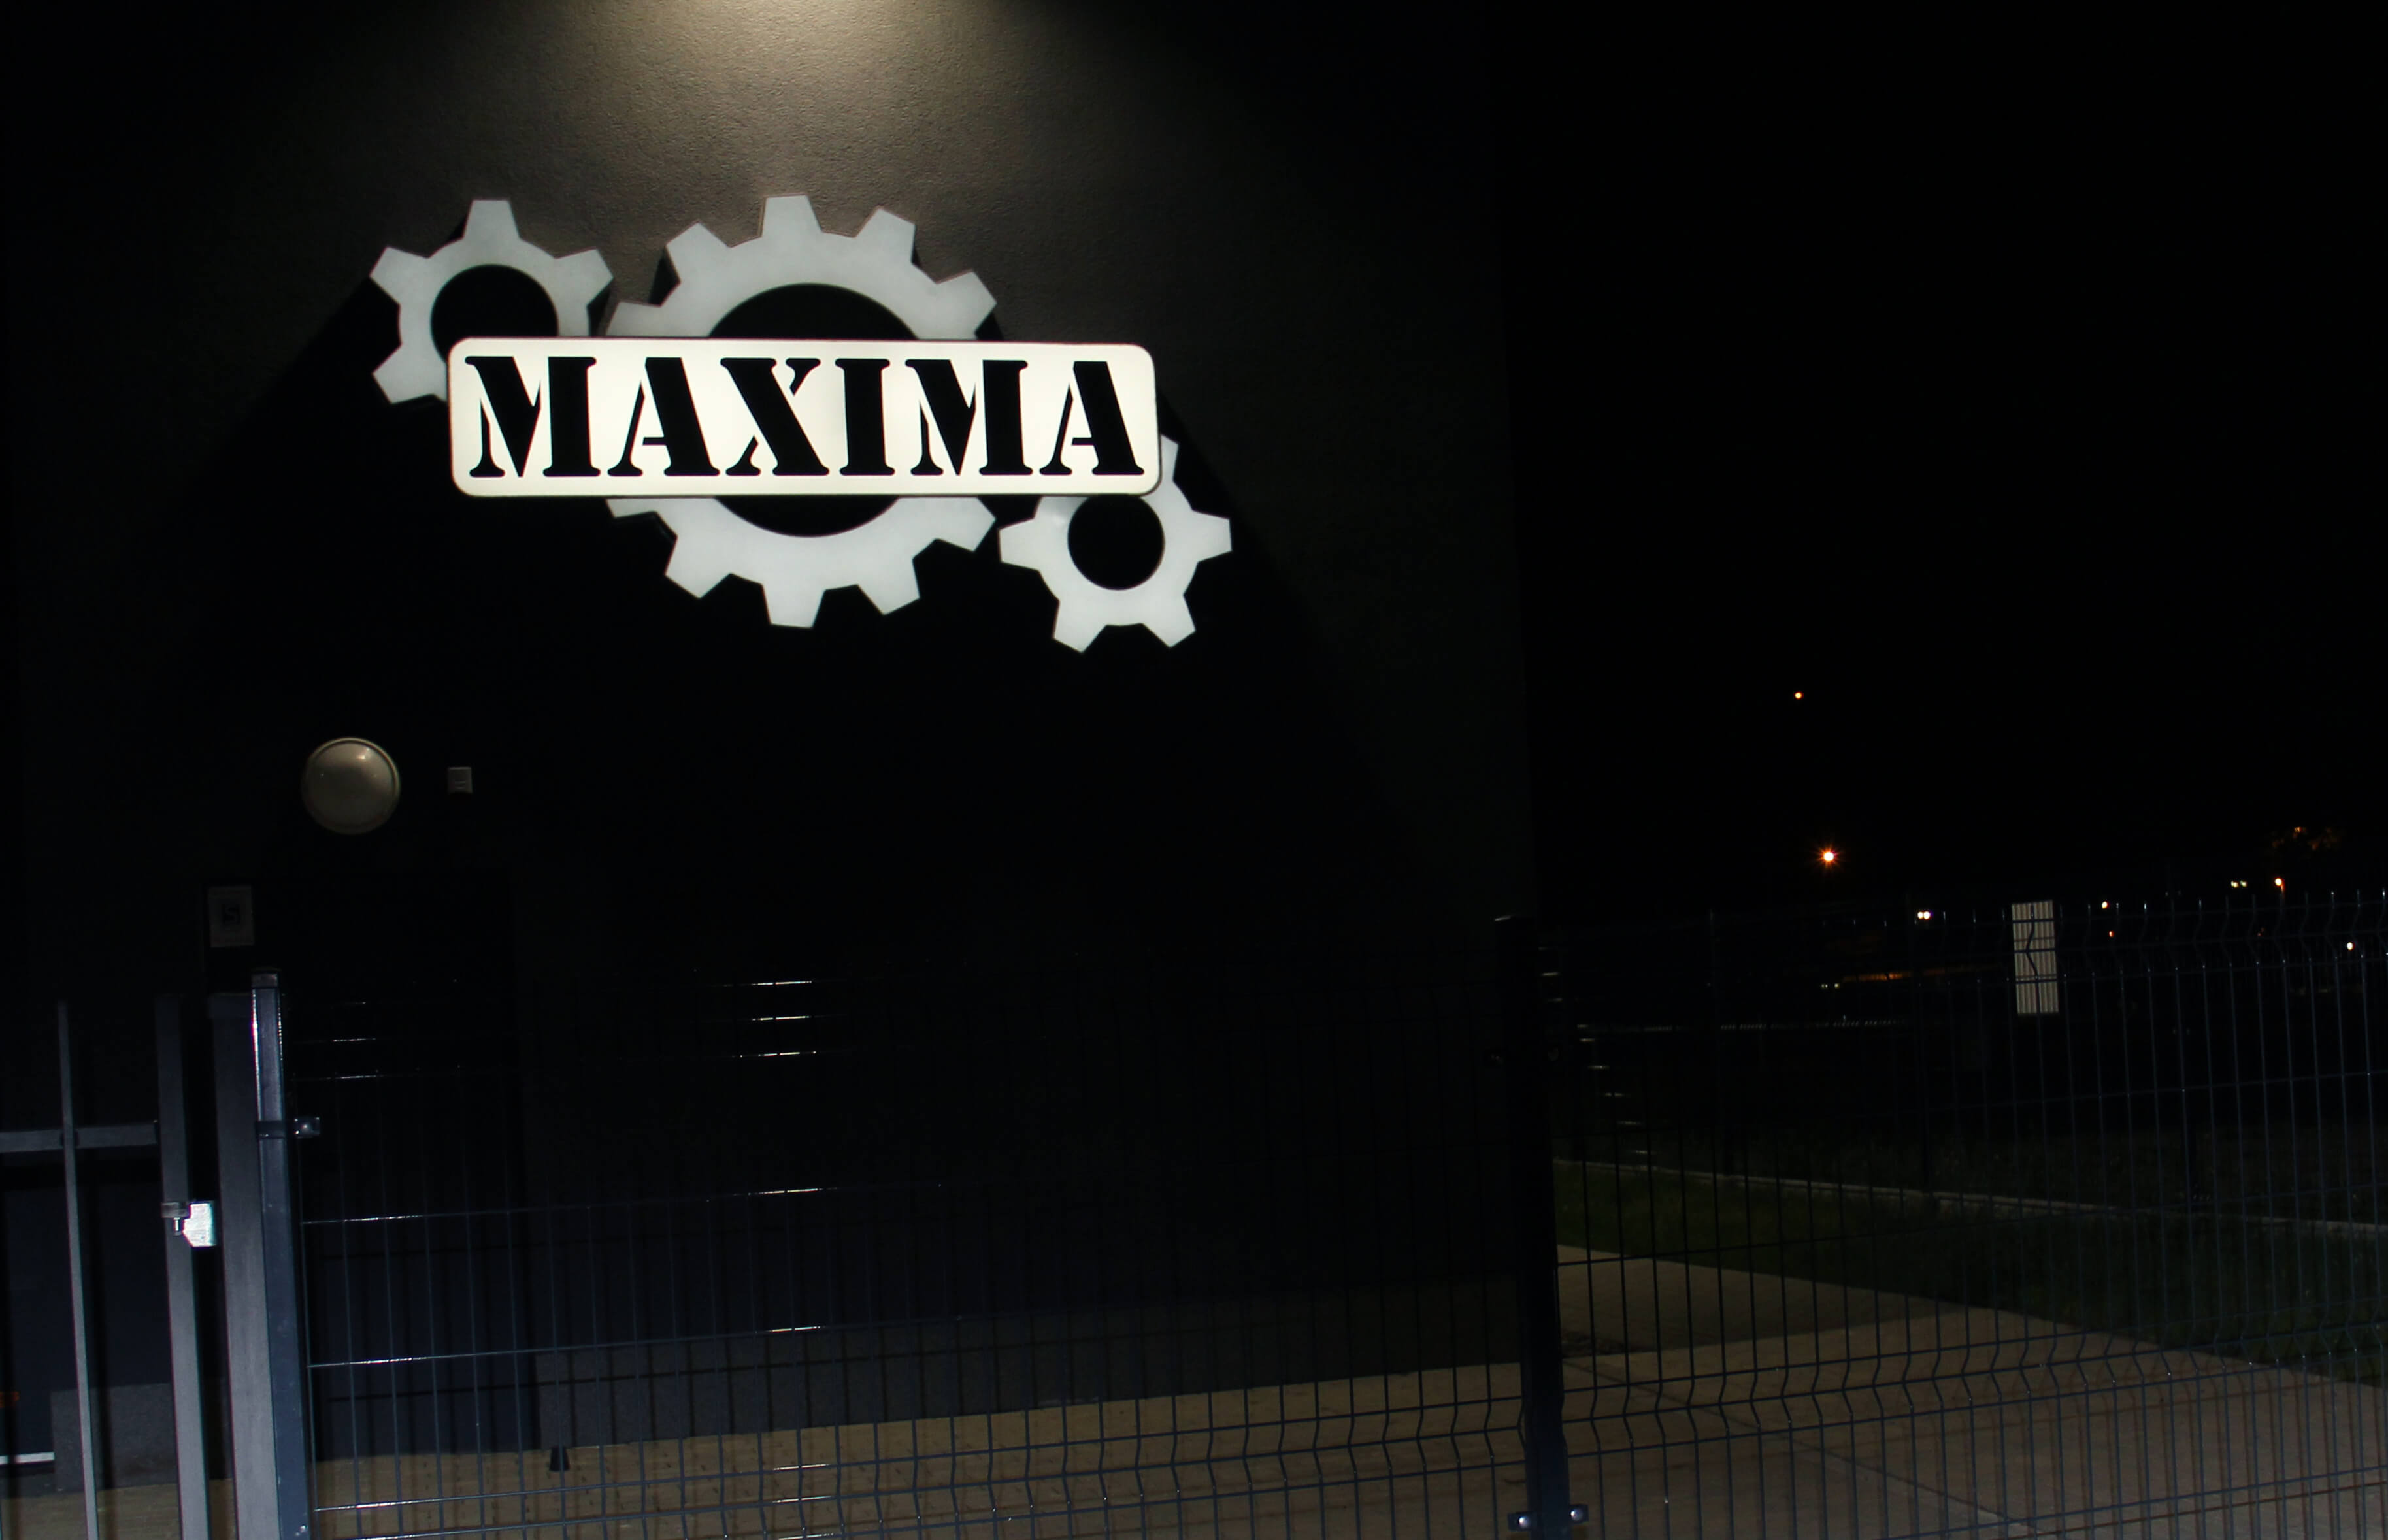 Maxima - Maxima - LED wall panel with company logo, made of plexiglass